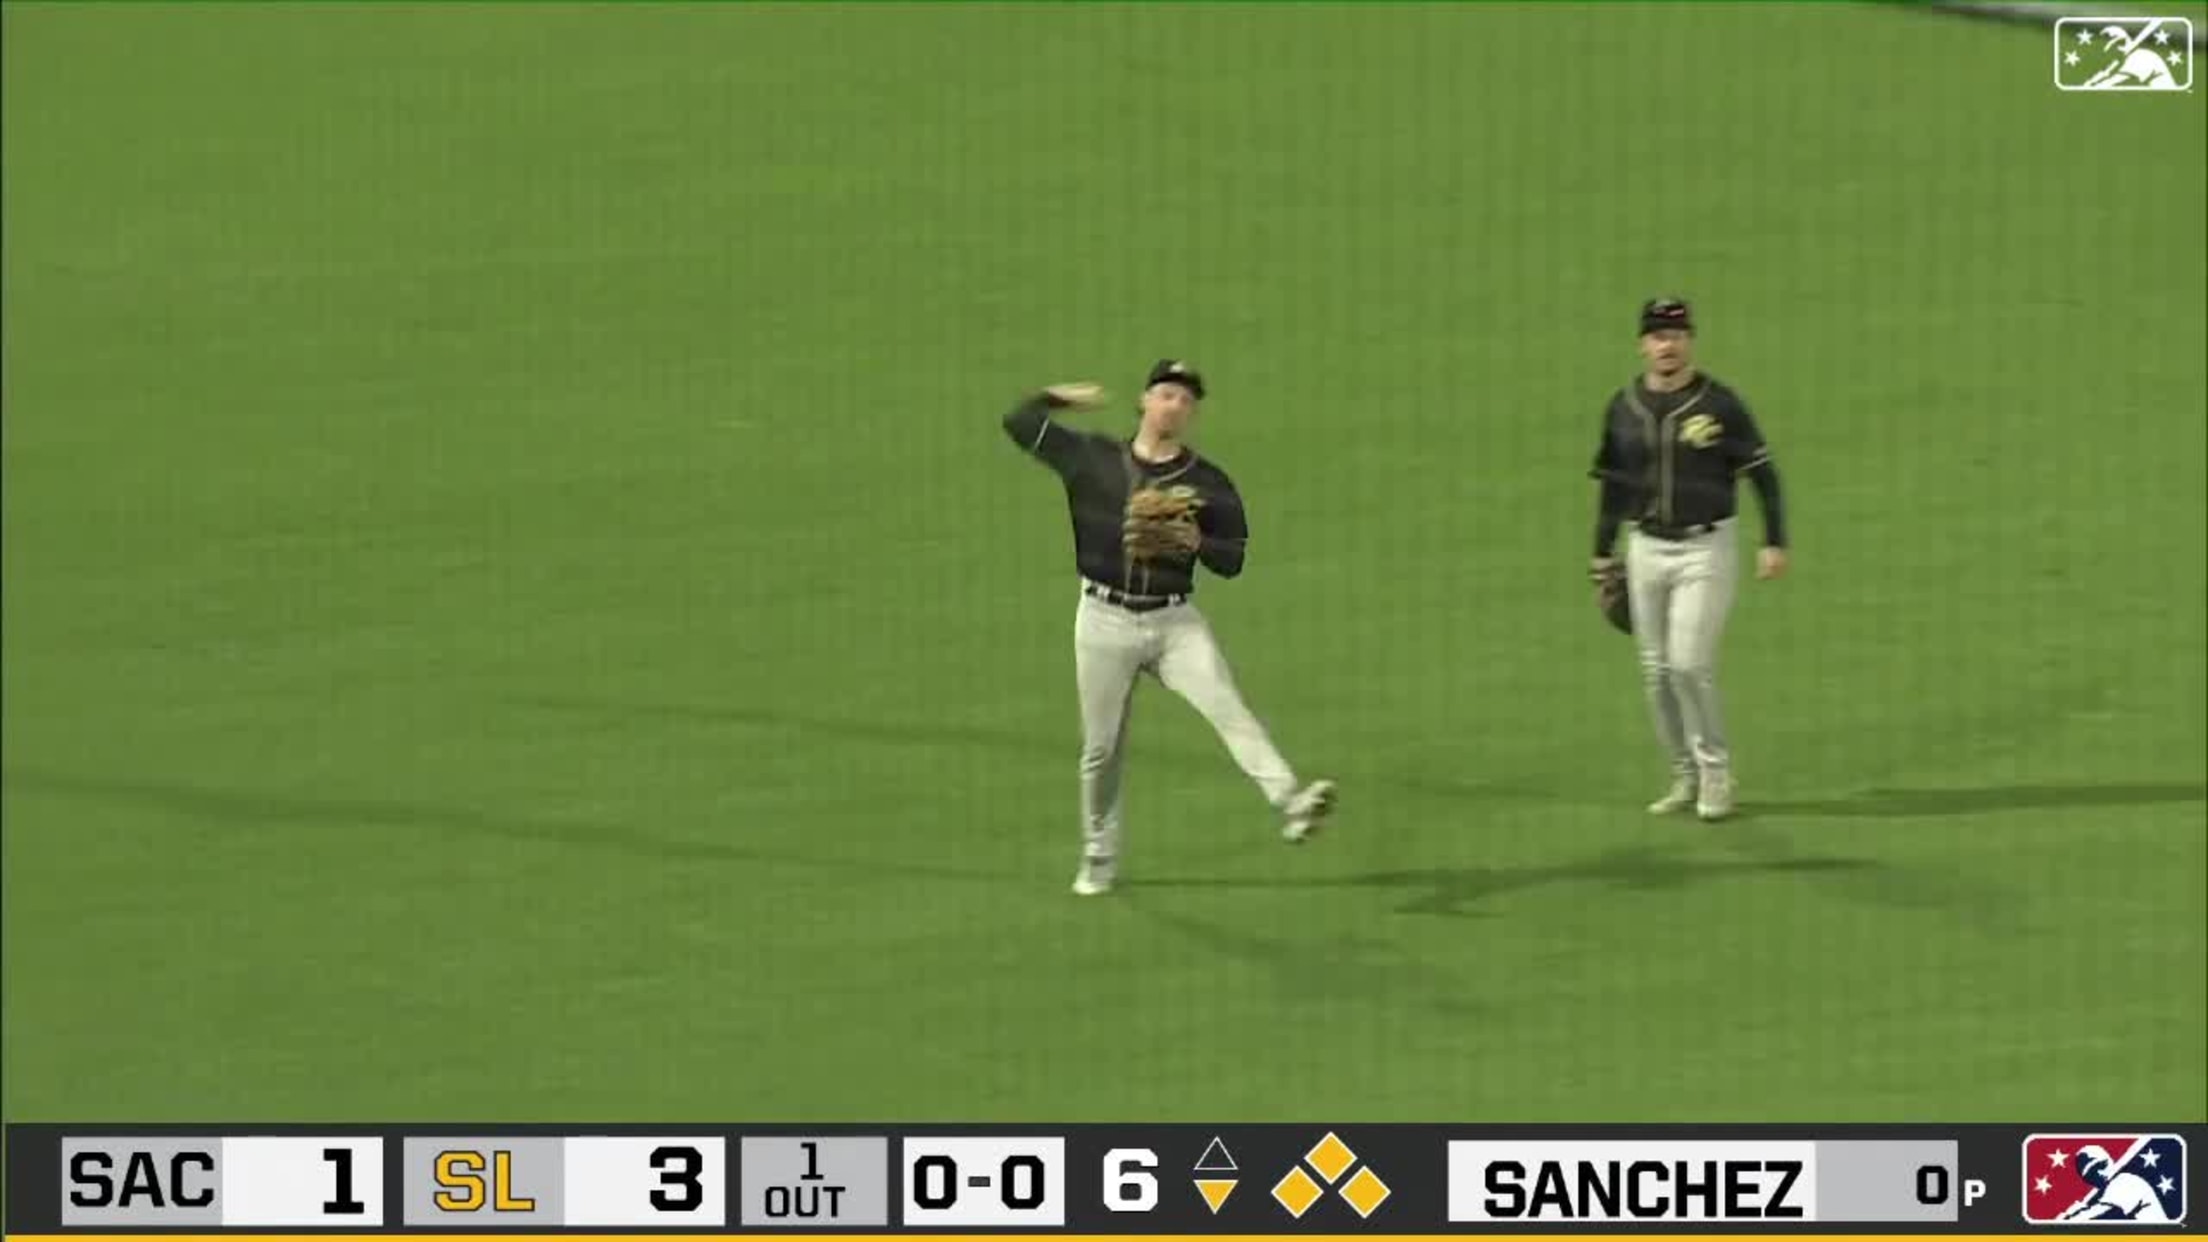 Schmitt's great catch and throw